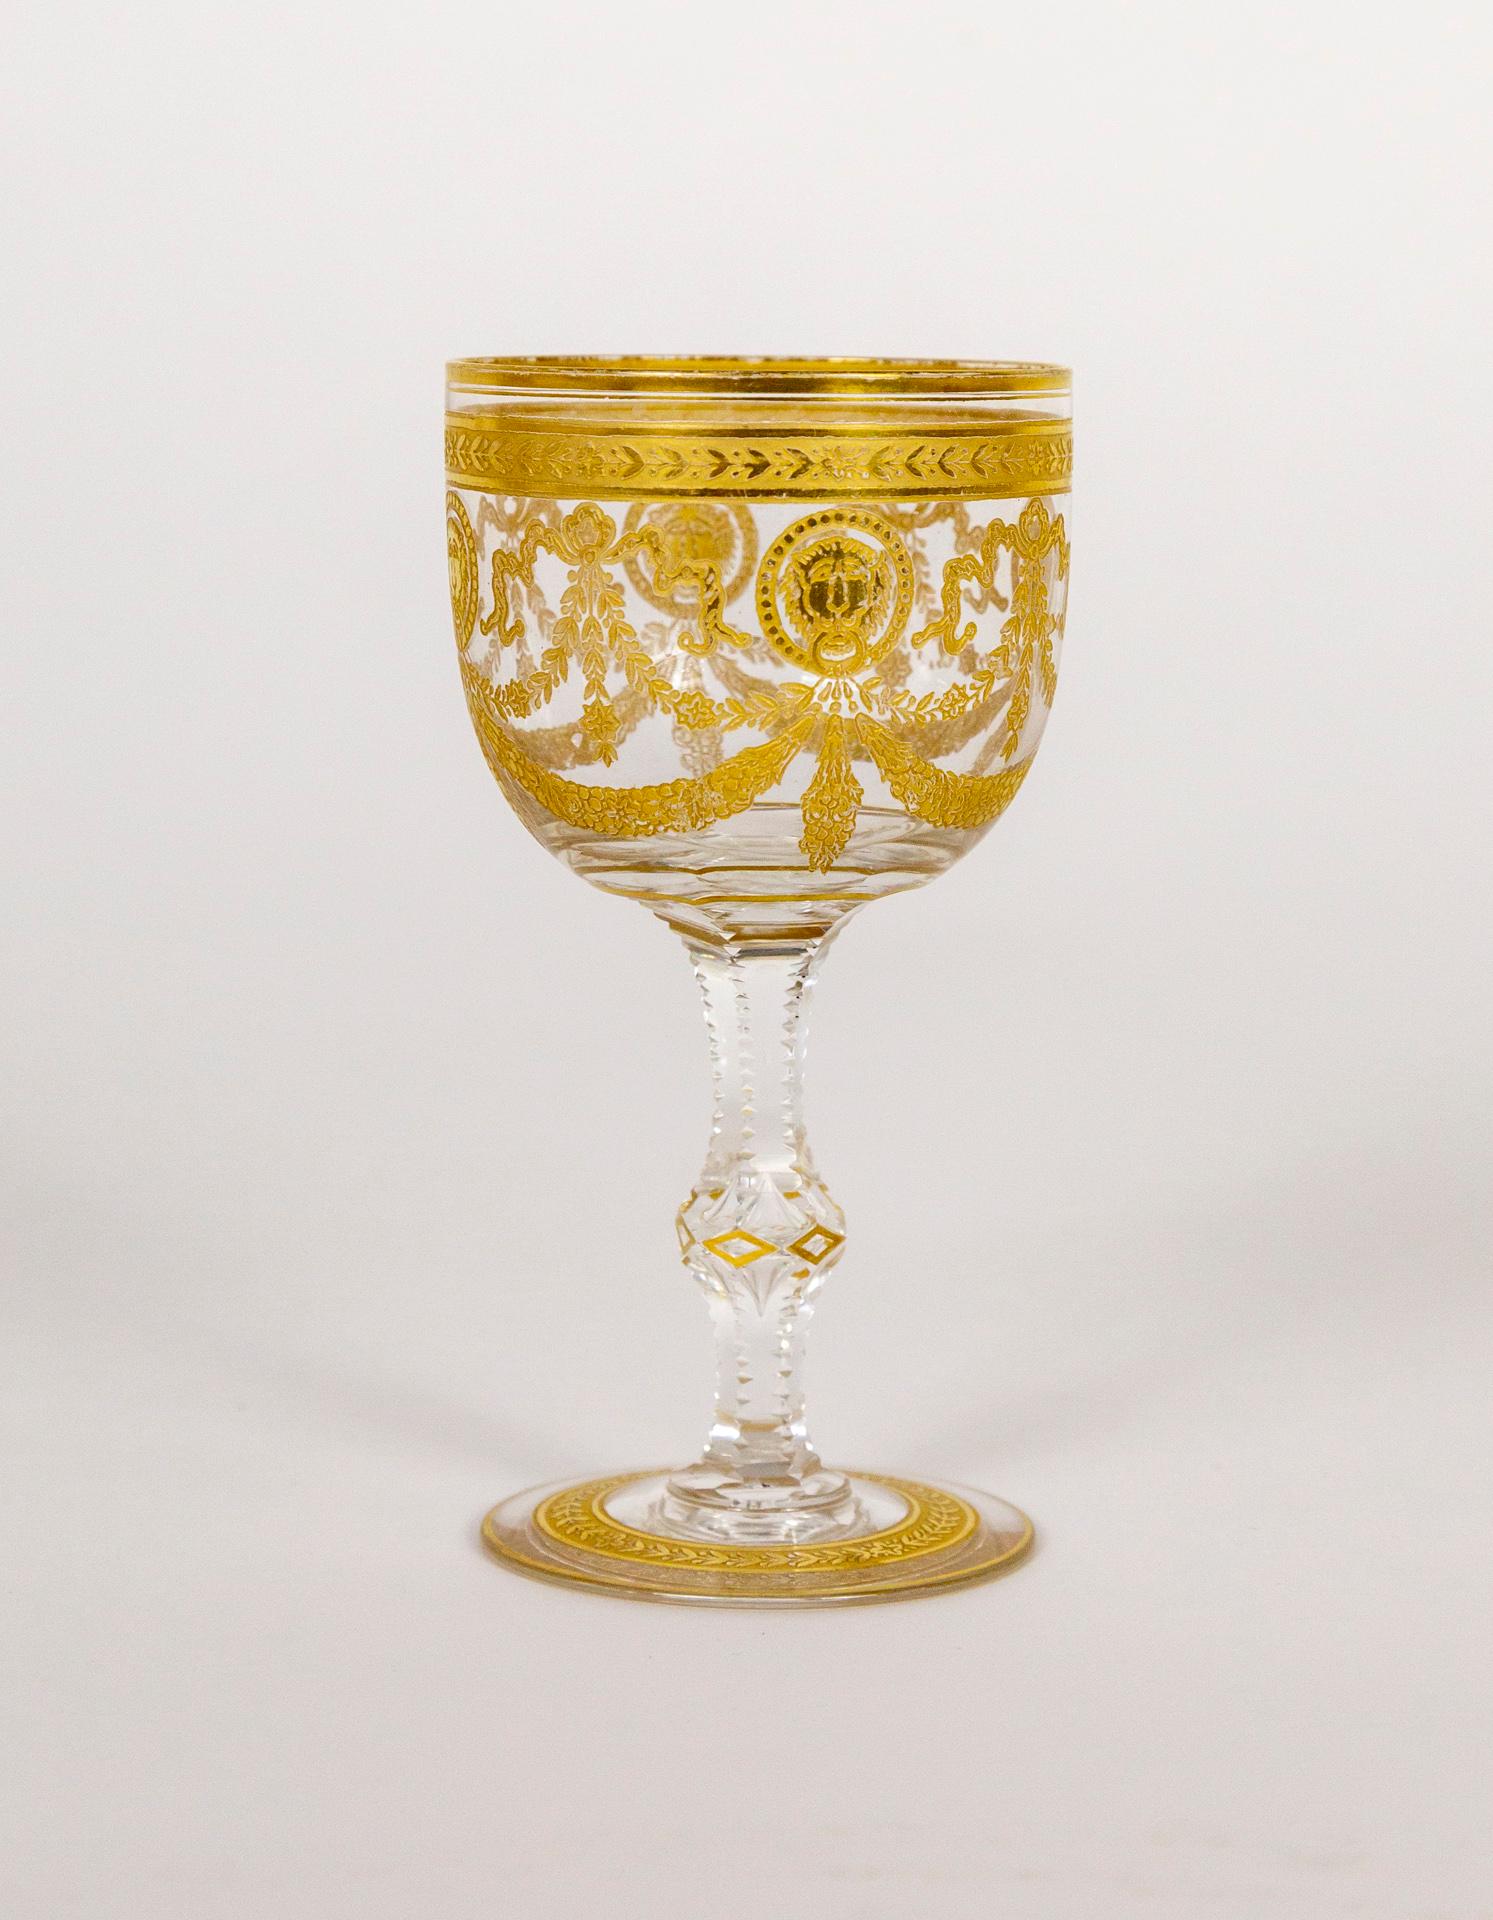 Ein antikes, mundgeblasenes Kristallweinglas, geschliffen und geätzt, mit einem verschlungenen Goldmotiv aus Bändern, Blumengirlanden und Löwengesichtern. Hergestellt von der renommierten Glasfirma St. Louis in Frankreich in den frühen 1900er